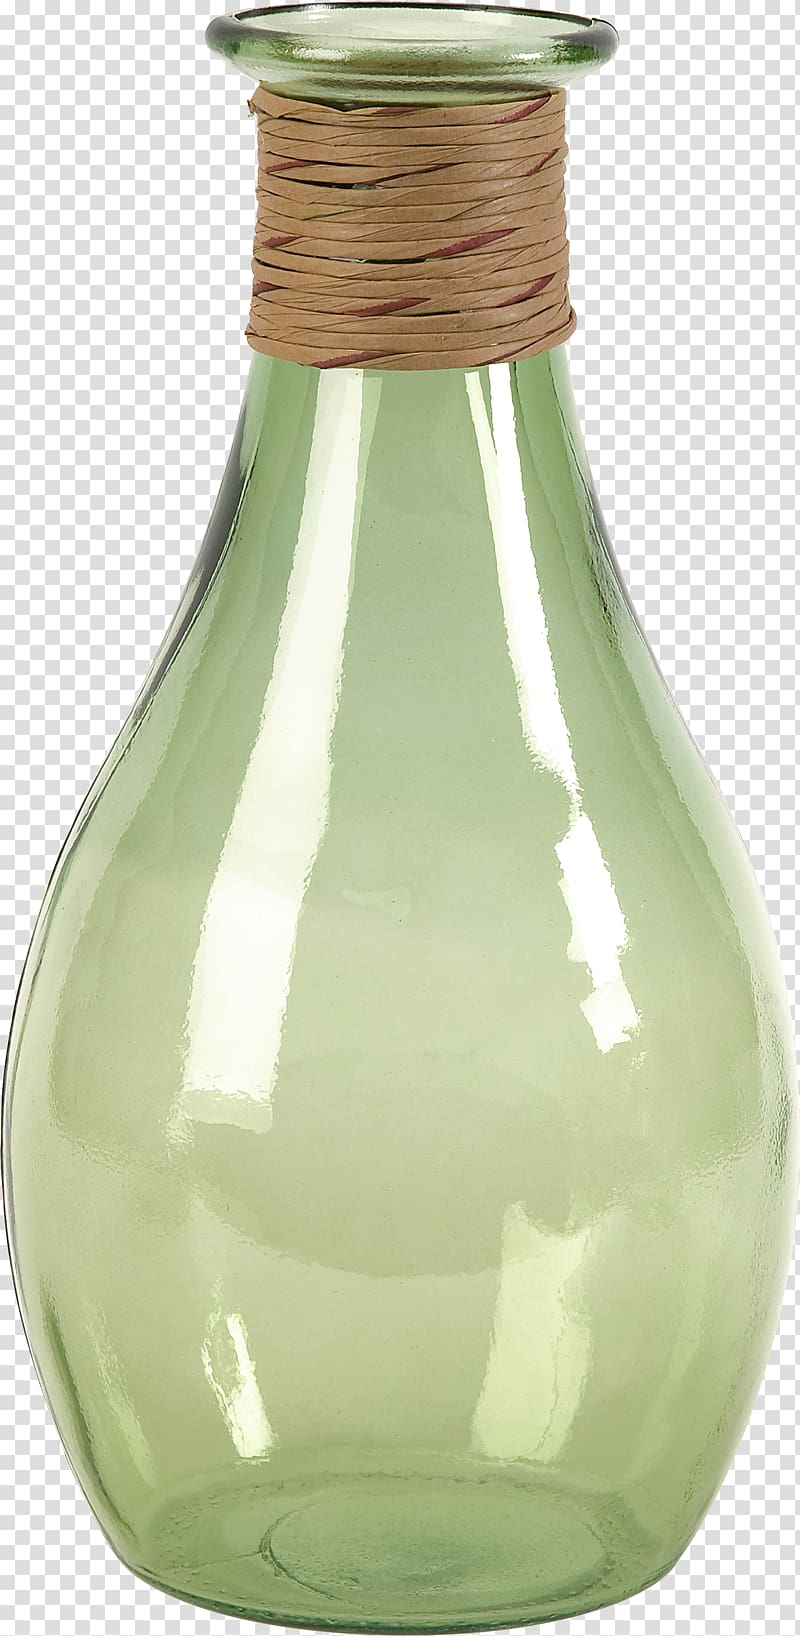 Vase Glass bottle, vase transparent background PNG clipart